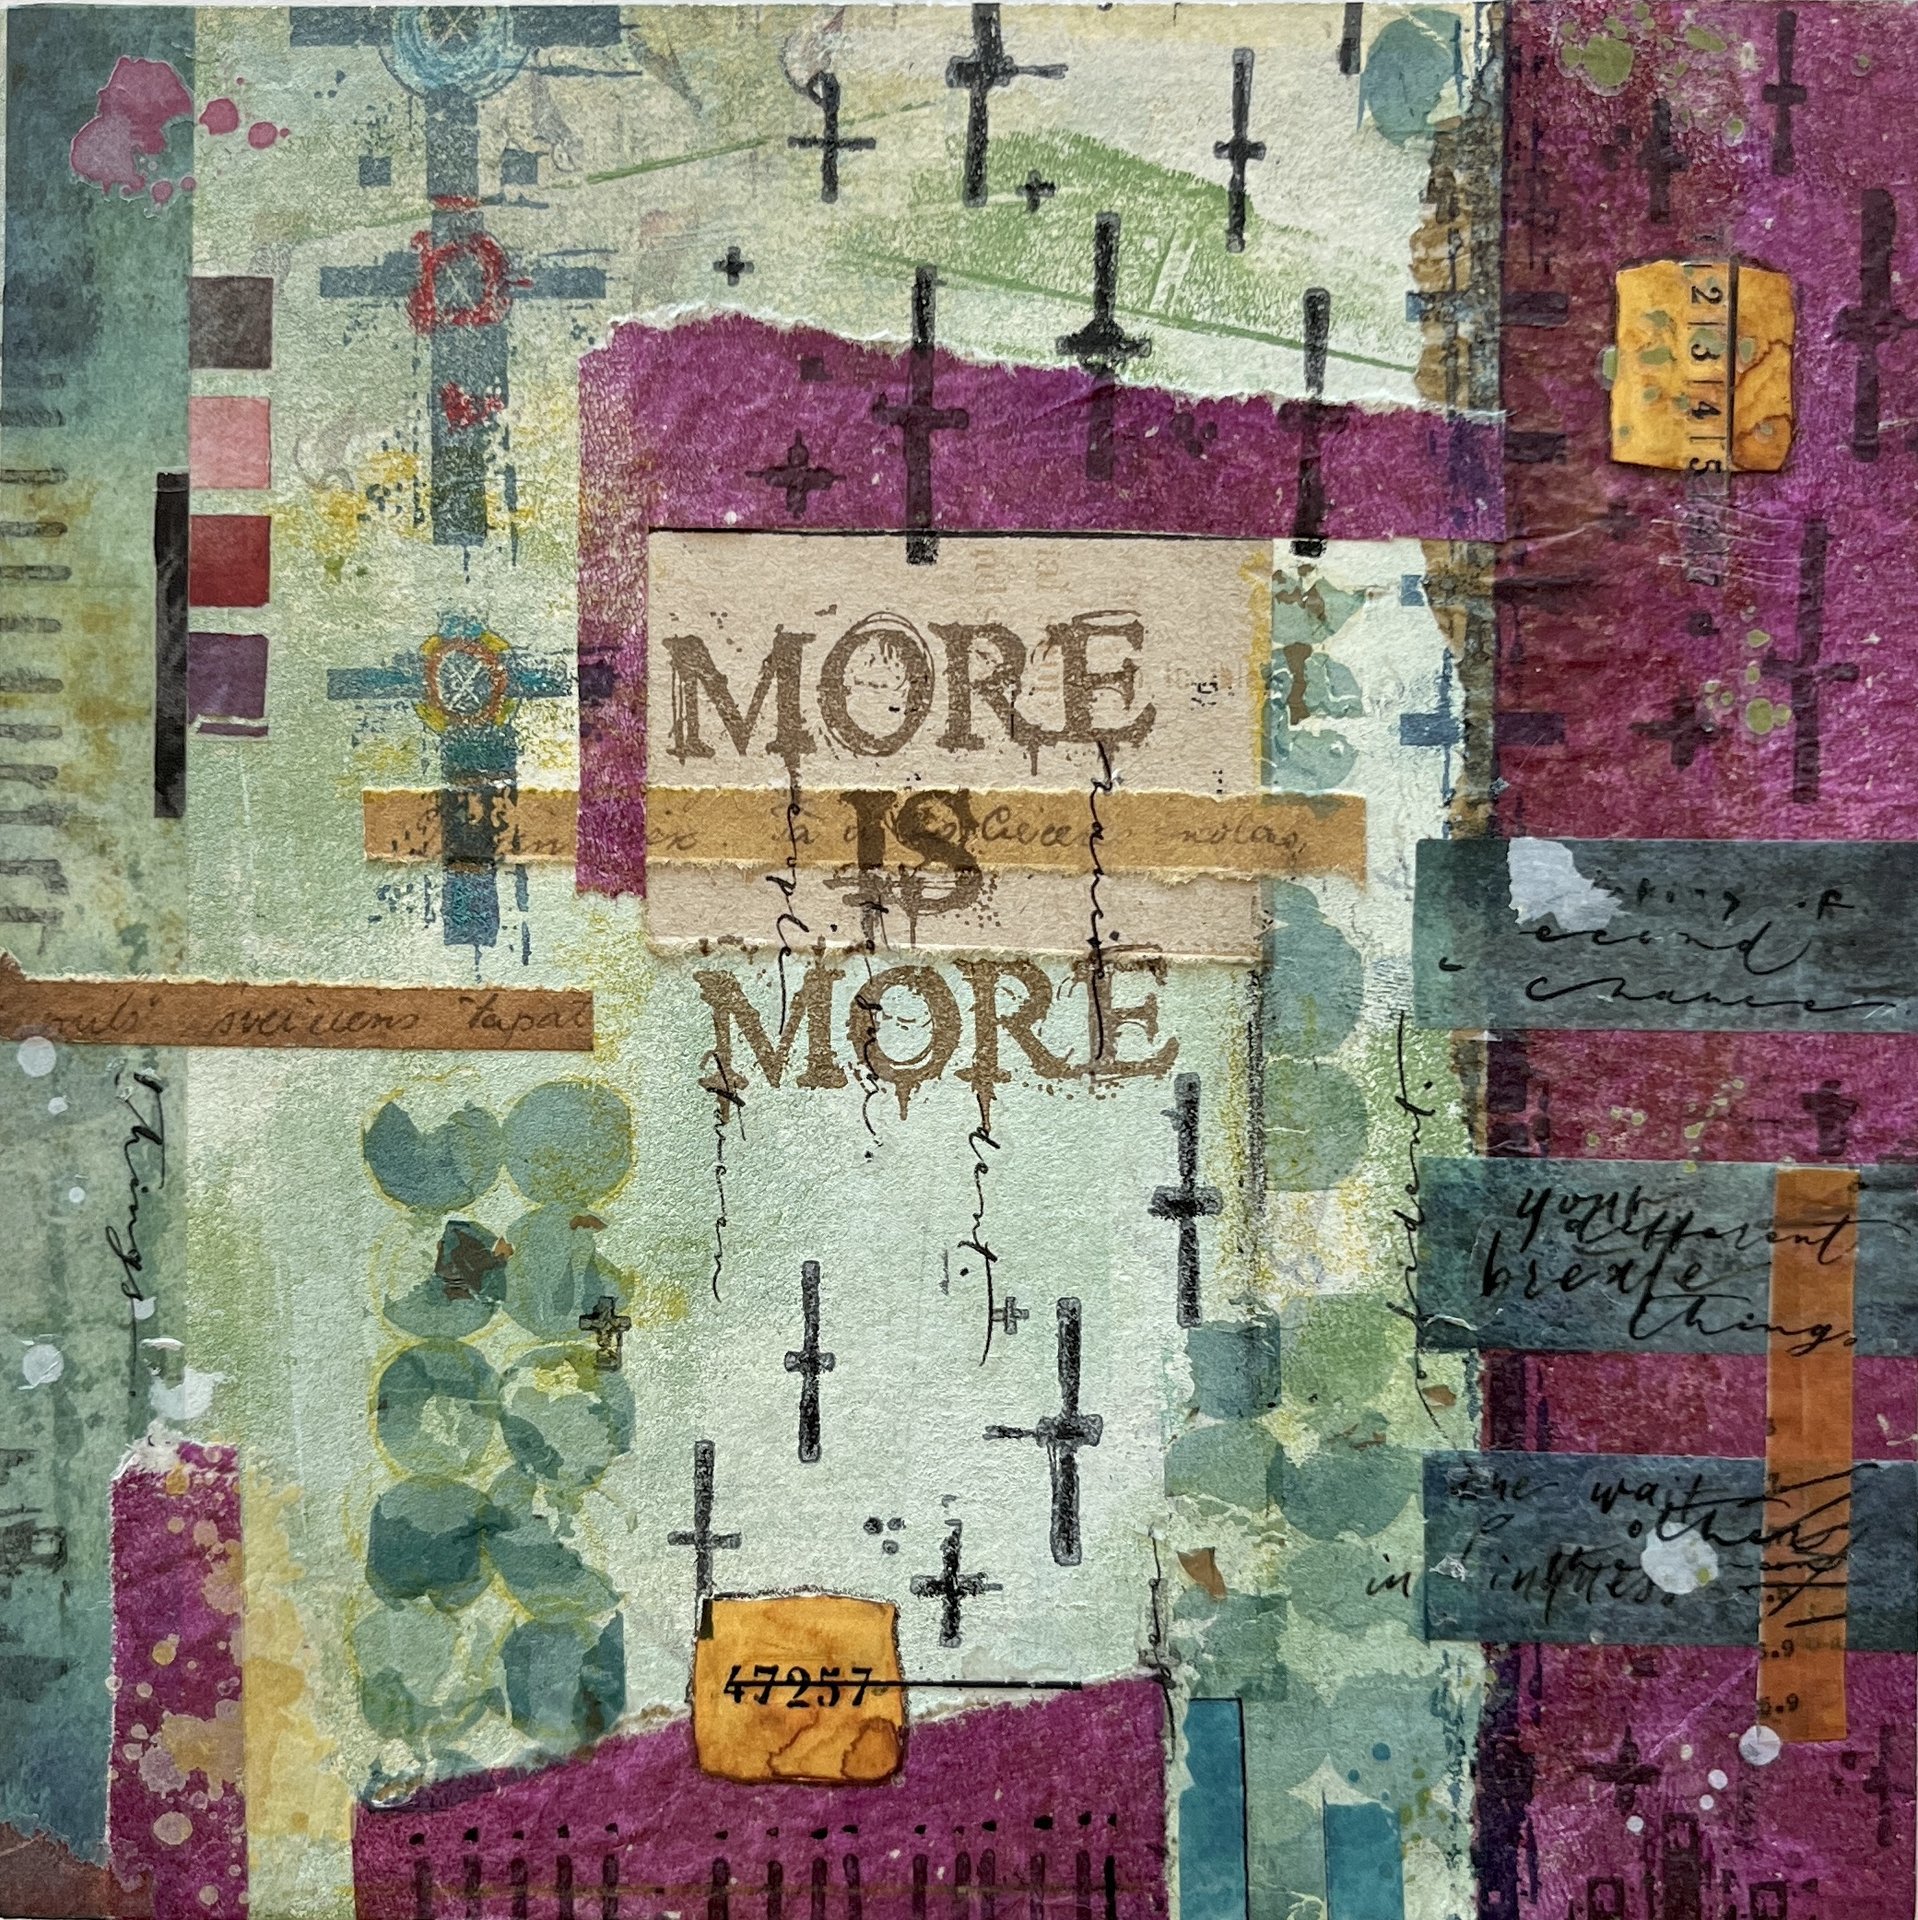 More is More: Original Mixed Media Art